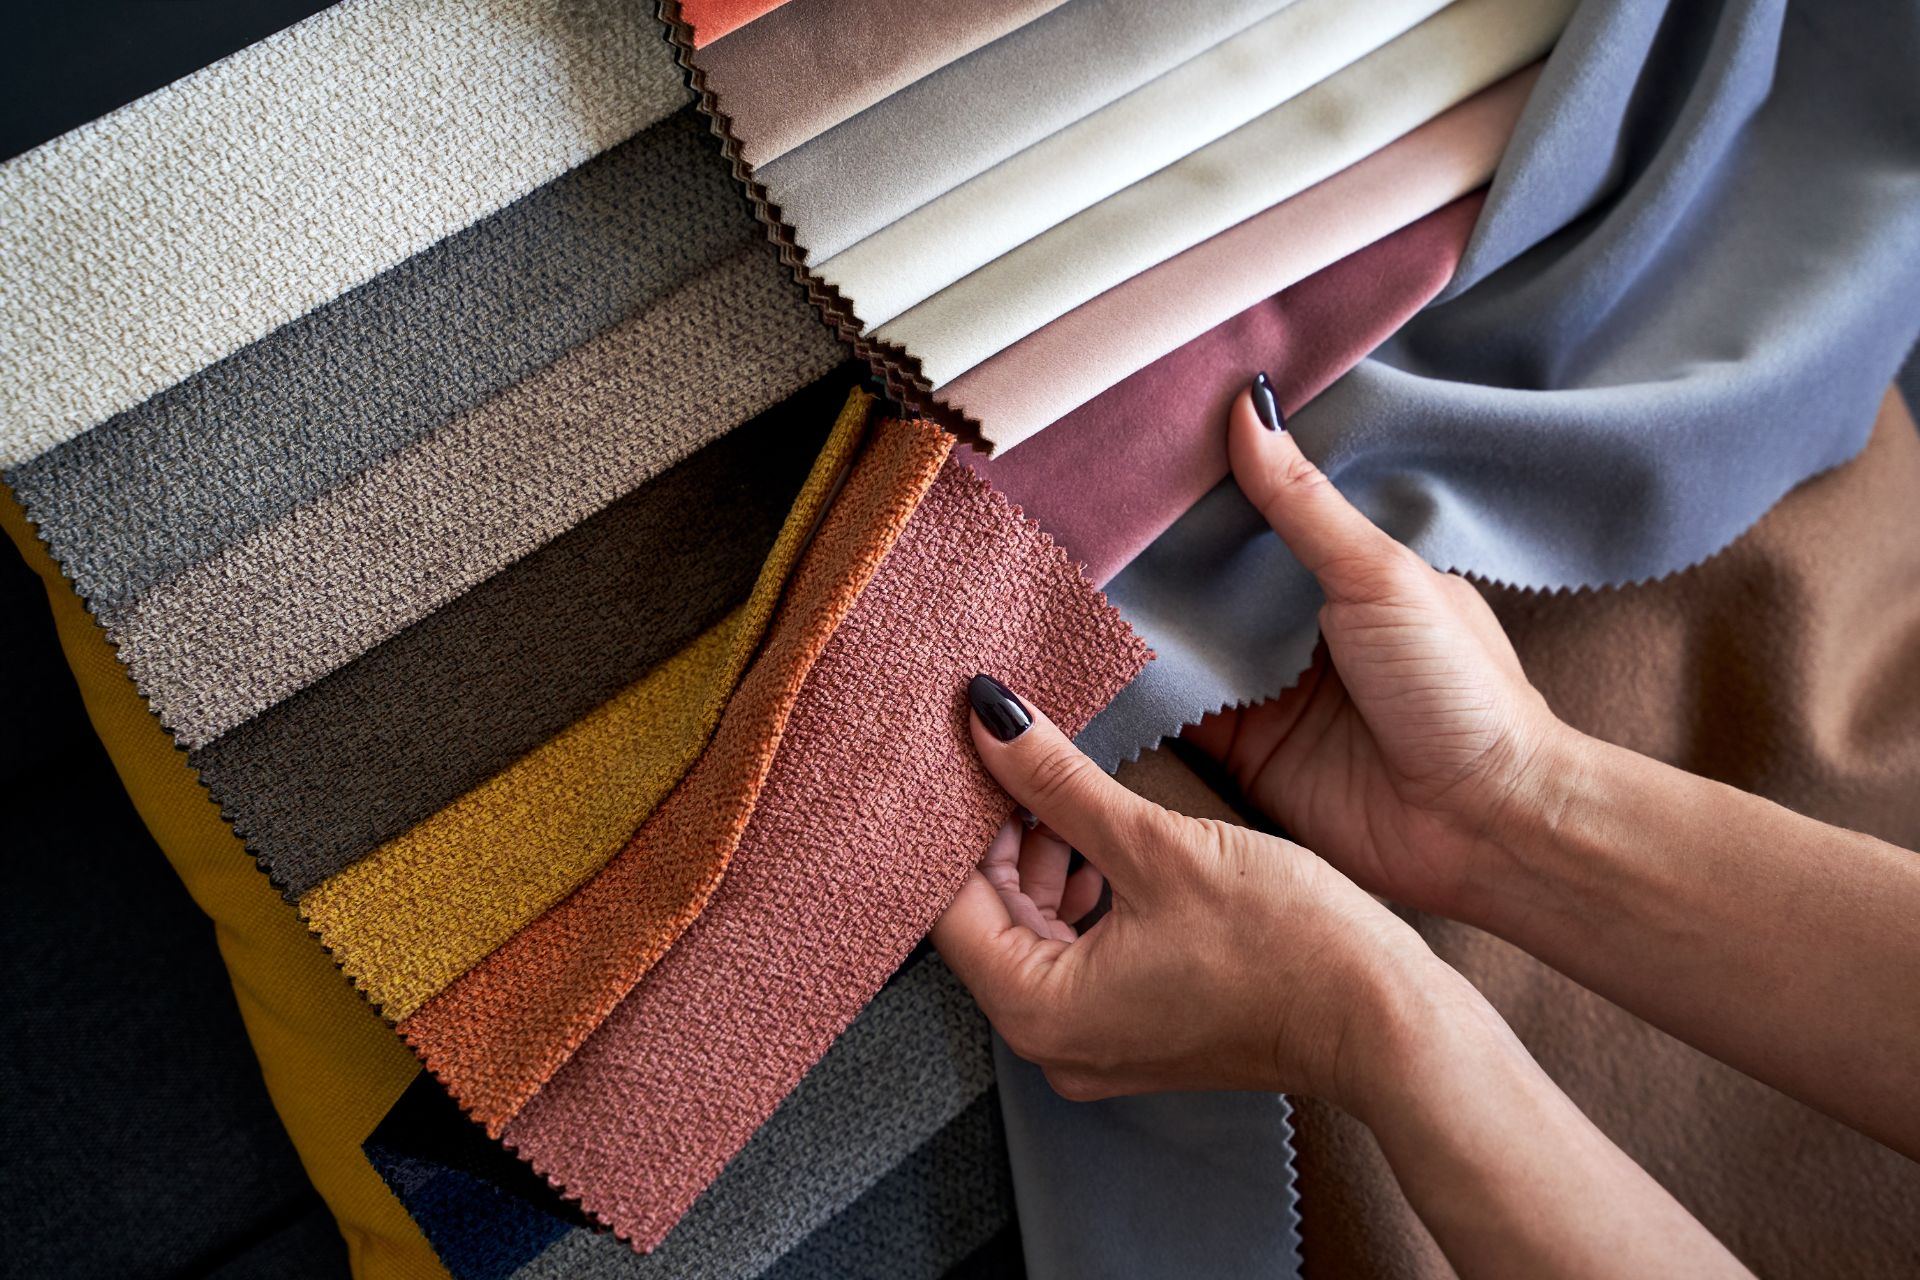 Muestra de varios textiles con colores y texturas distintas